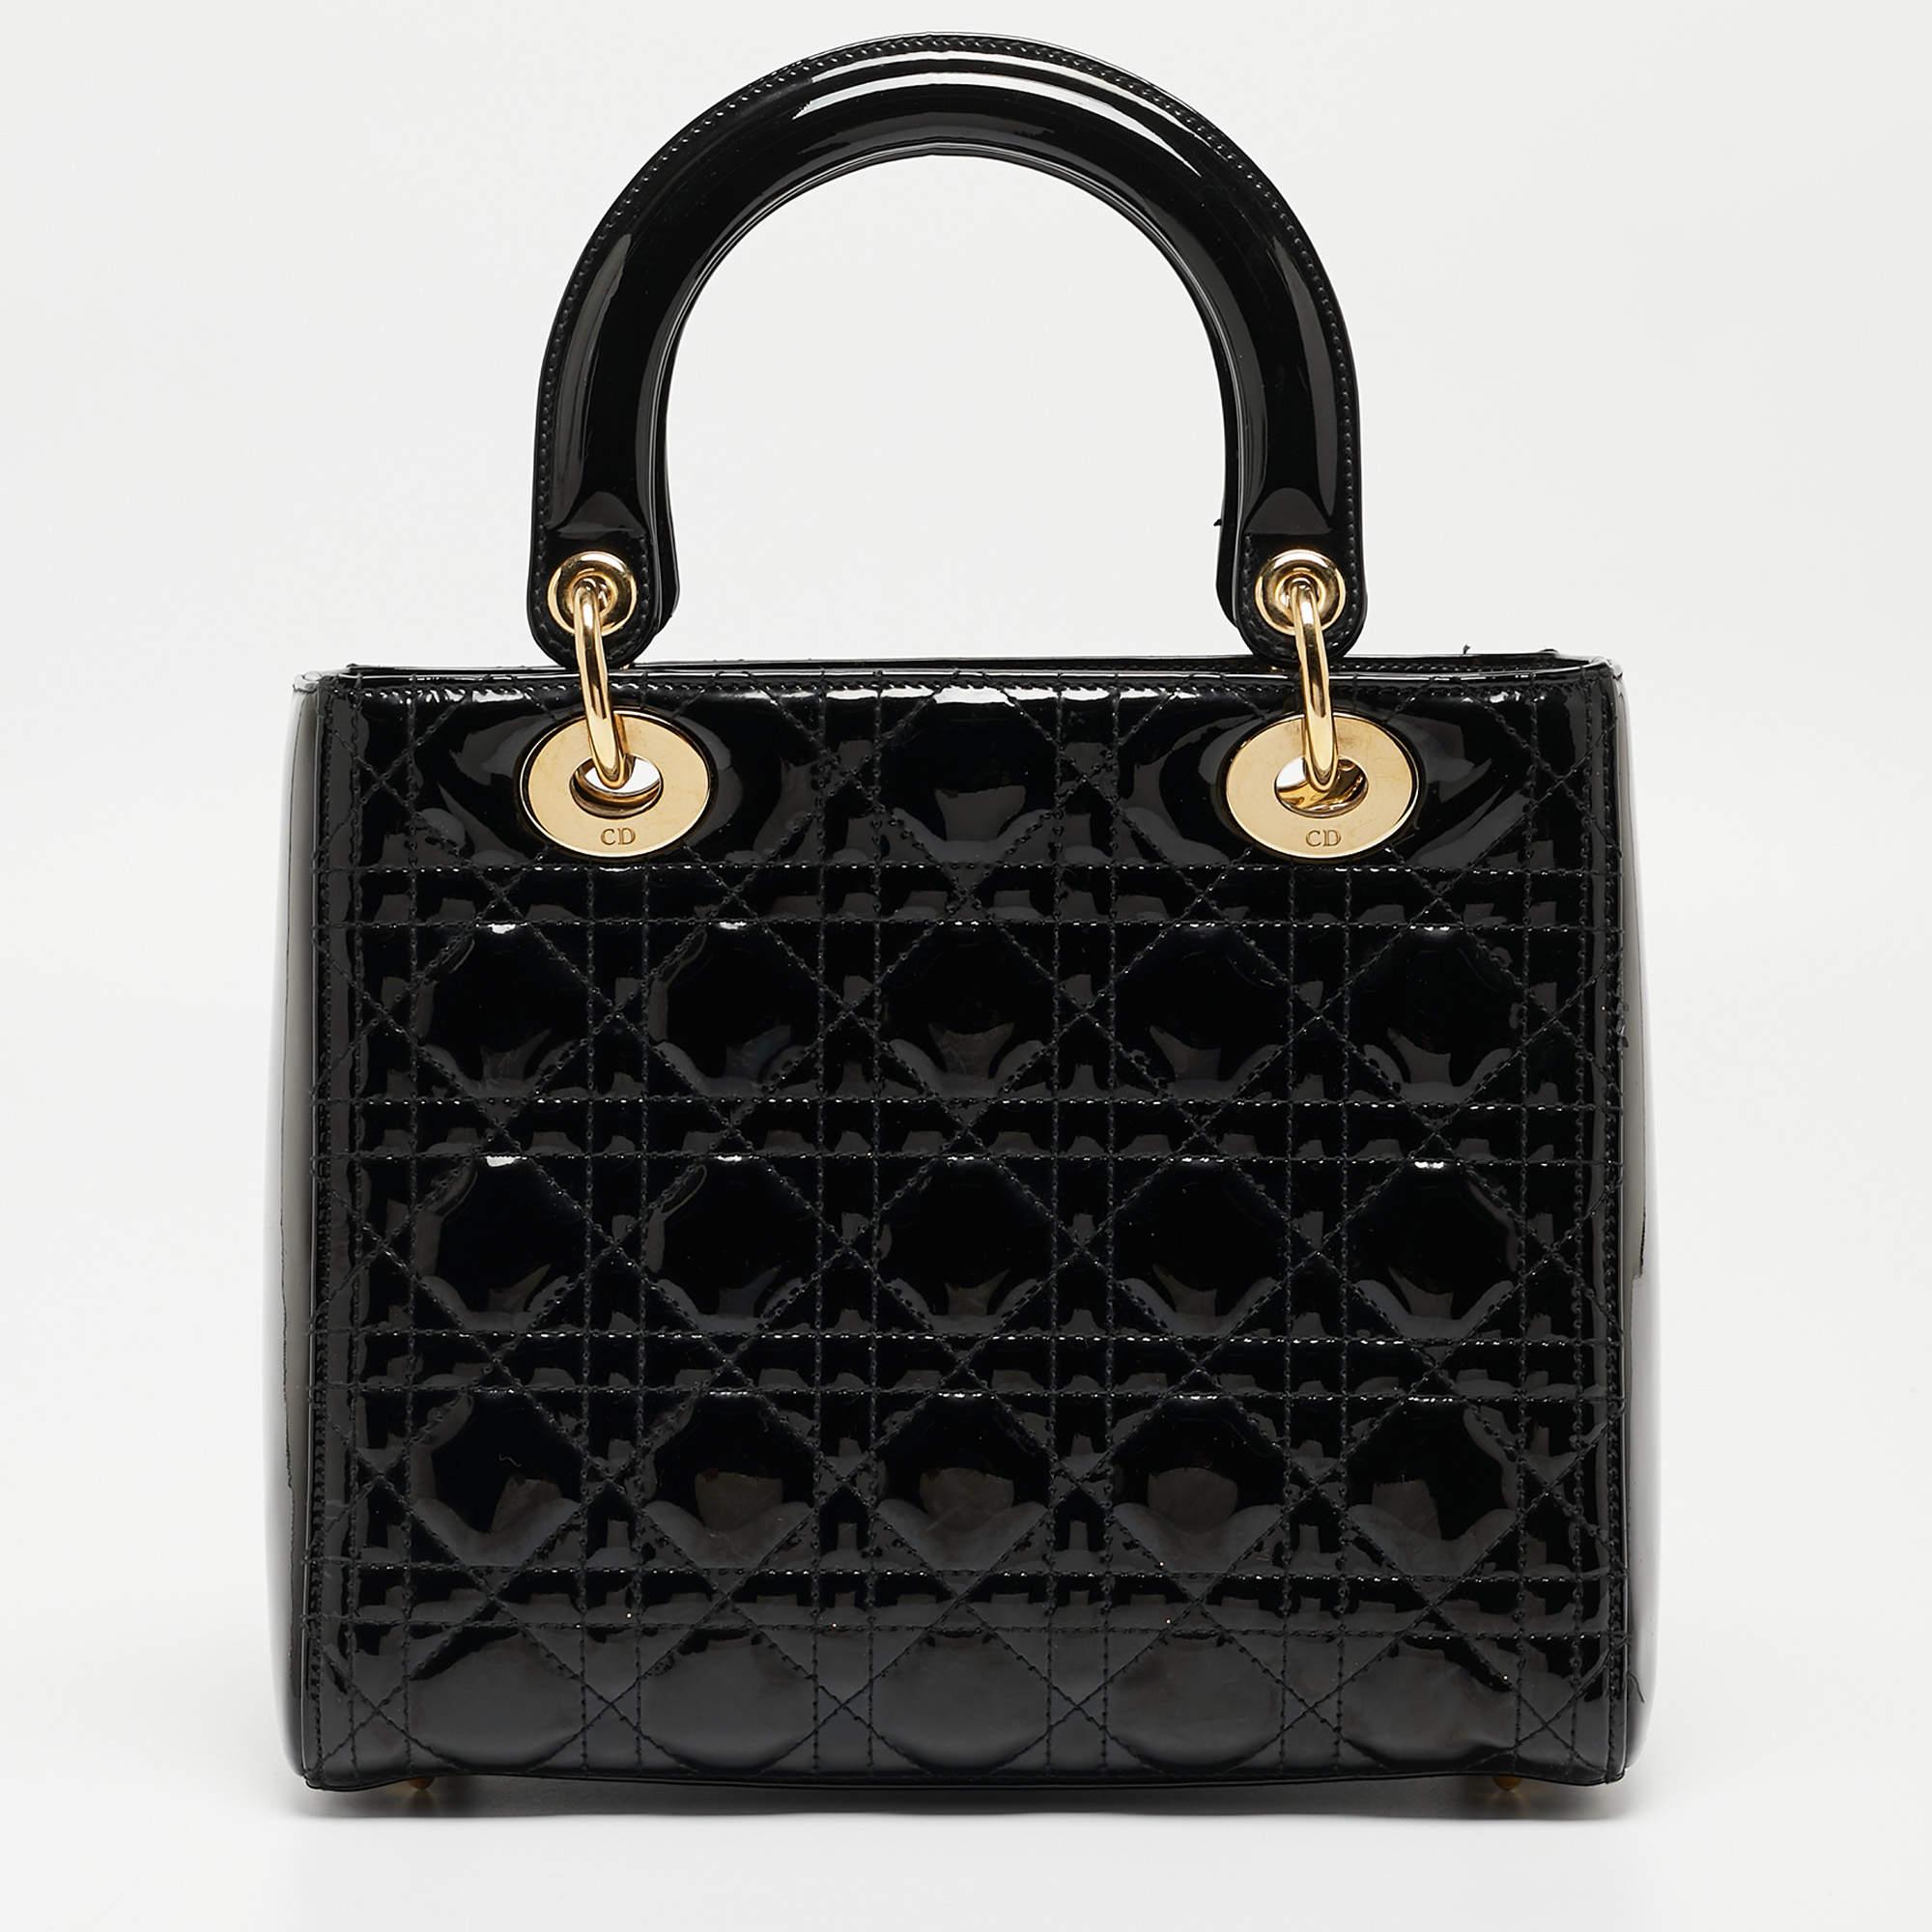 Un statut intemporel et un grand design caractérisent le fourre-tout Lady Dior. Il s'agit d'un sac emblématique dans lequel les gens continuent d'investir à ce jour. Cette beauté classique est réalisée en cuir verni Cannage noir. Le sac est doté